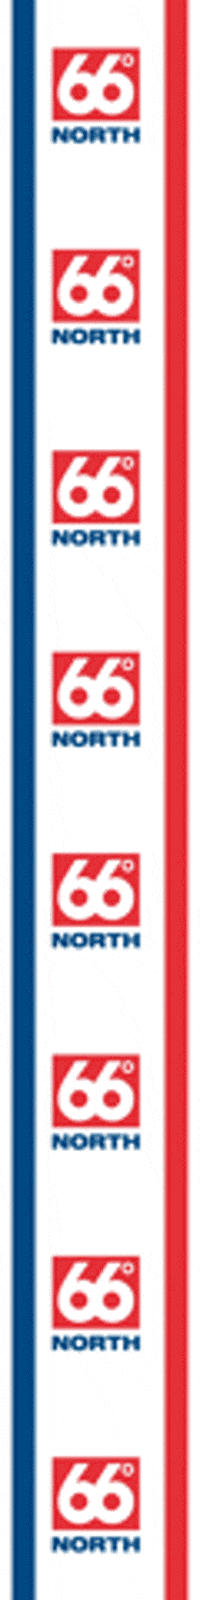 66north 66 66north 66 north 66nordur GIF